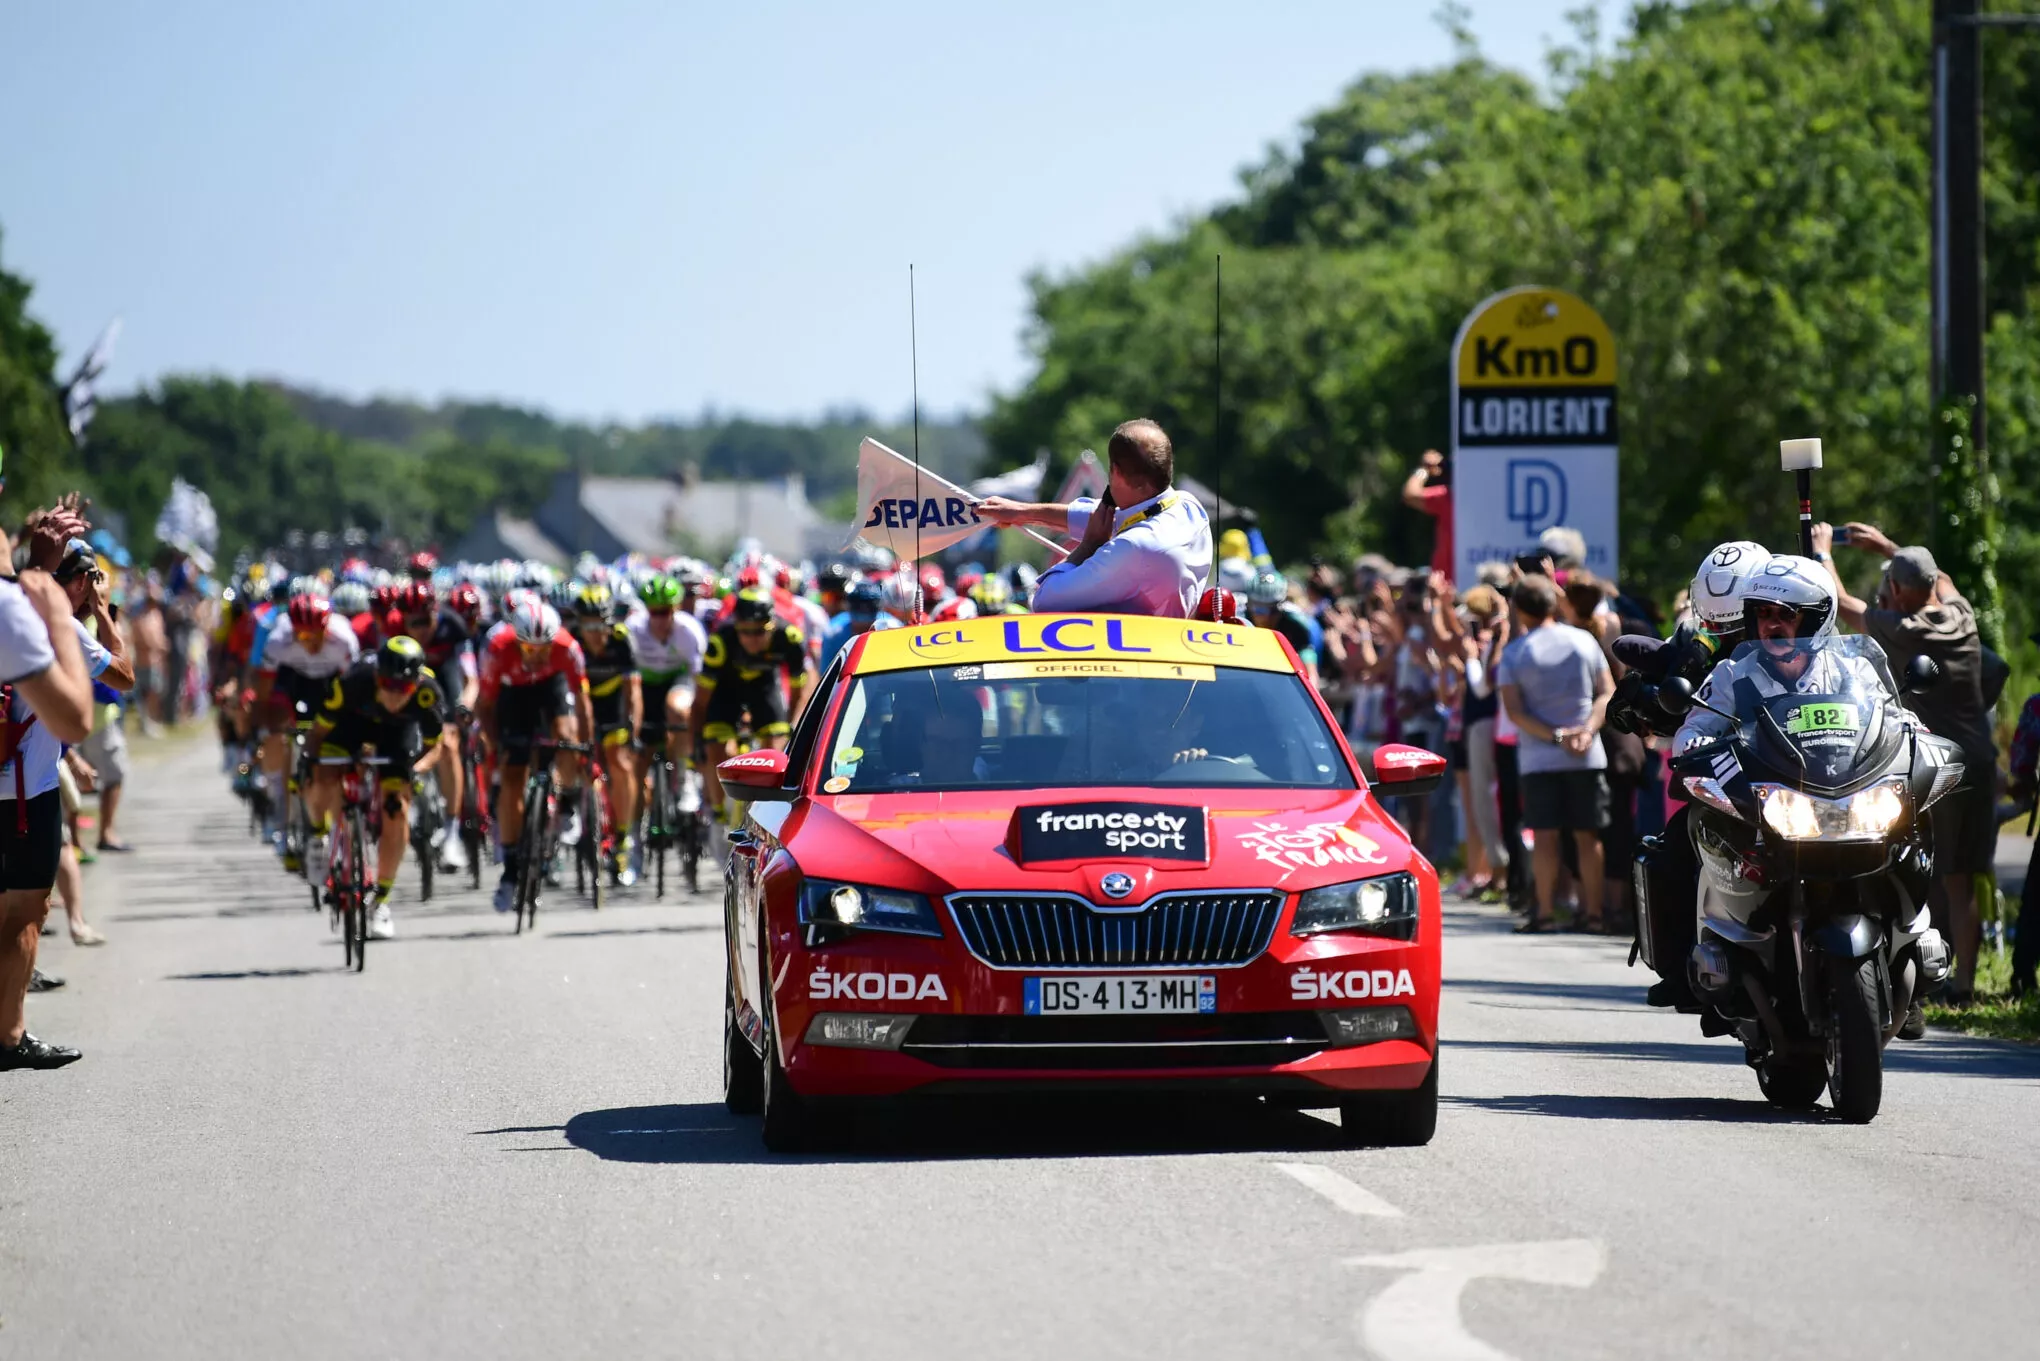 CPPour la 16e edition consecutive SKODA soutient le Tour de France en tant que partenaire principalheadline